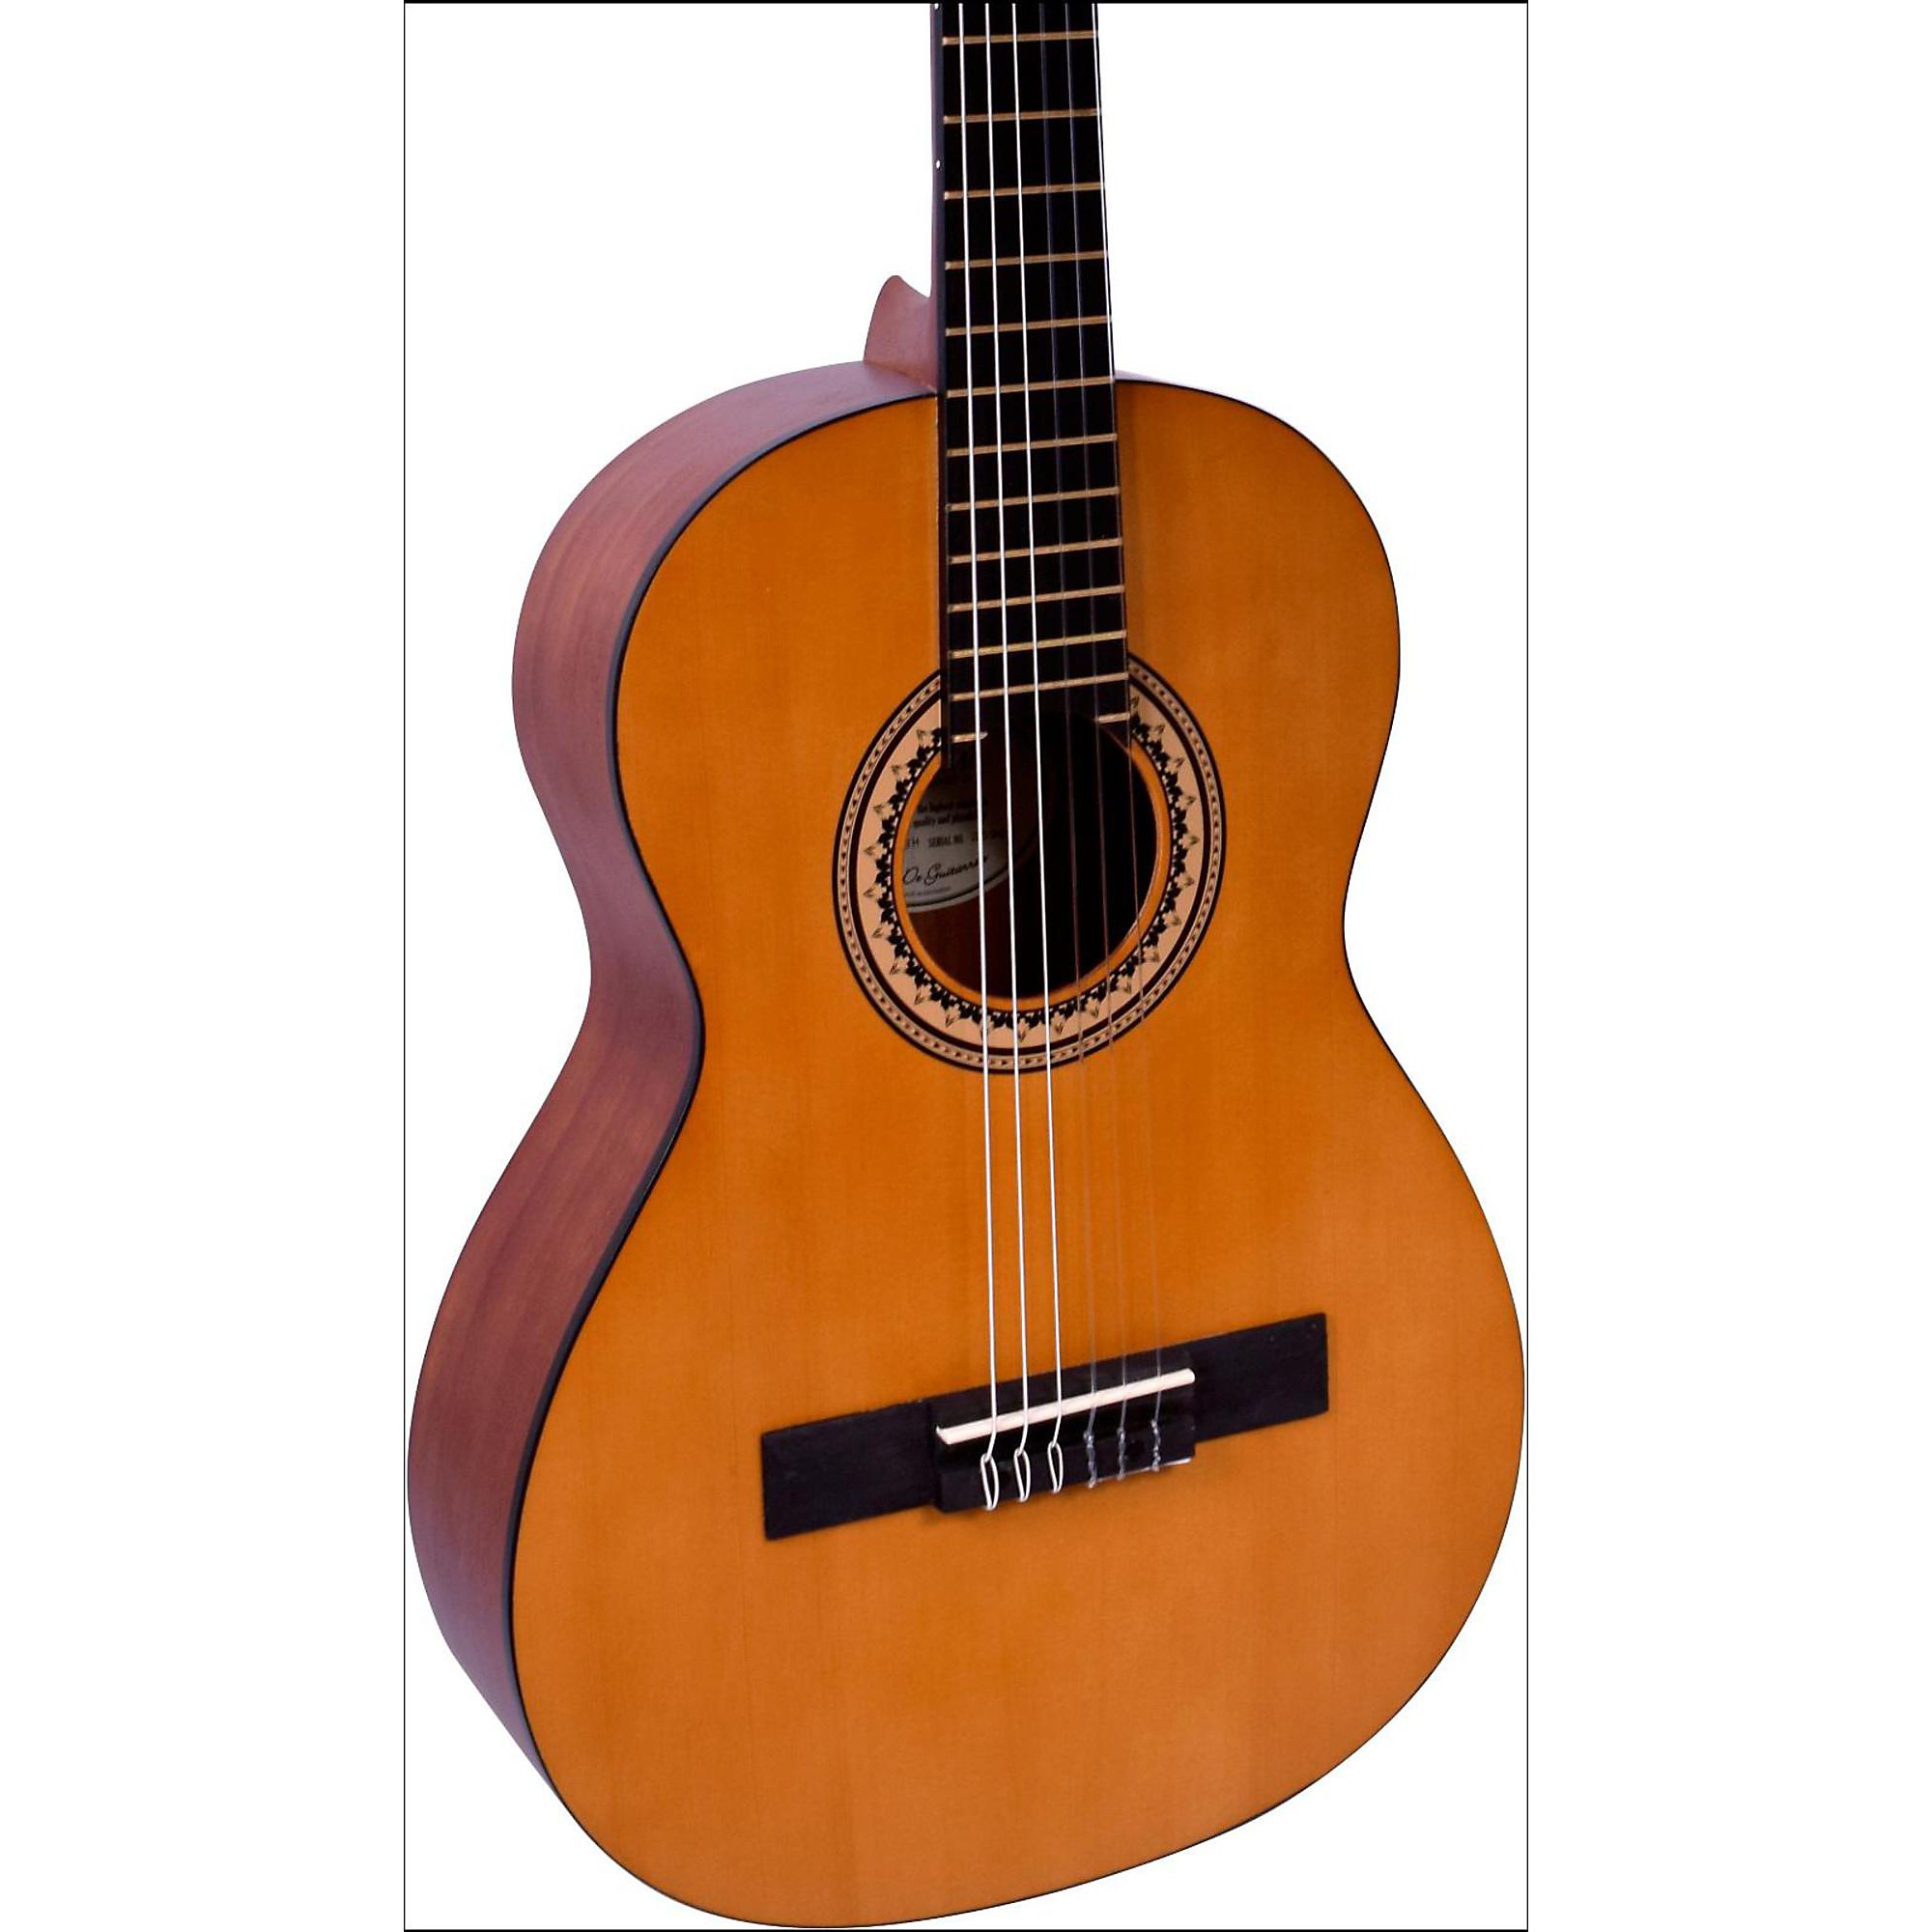 Гибридная классическая акустическая гитара Valencia 200 Series, размер 3/4, натуральный